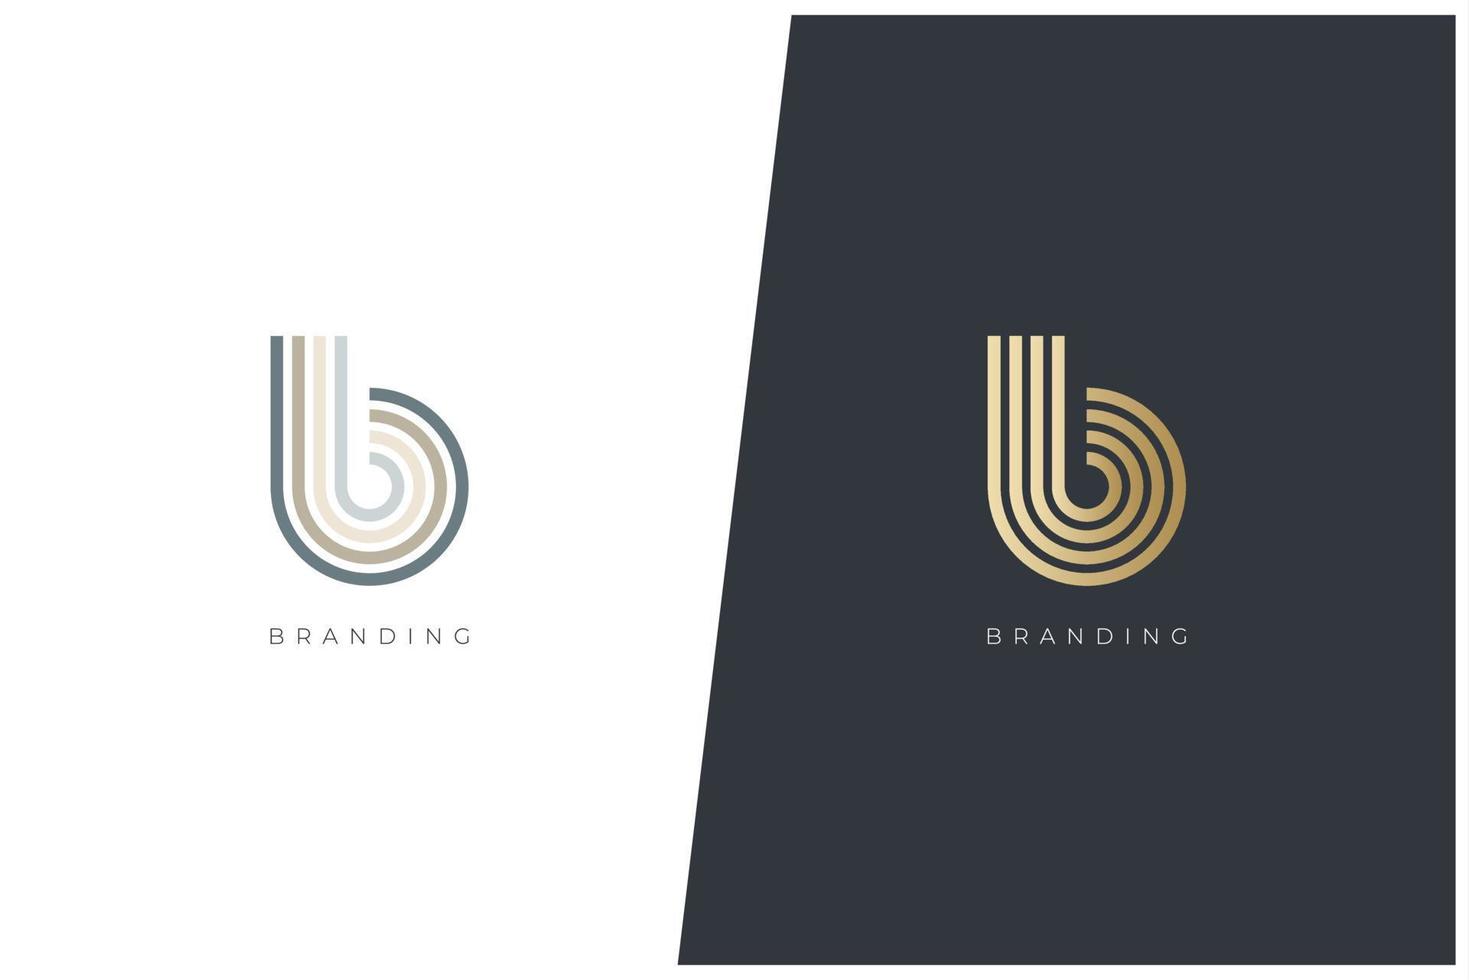 b carta logotipo vetor conceito ícone marca registrada. marca de logotipo universal b